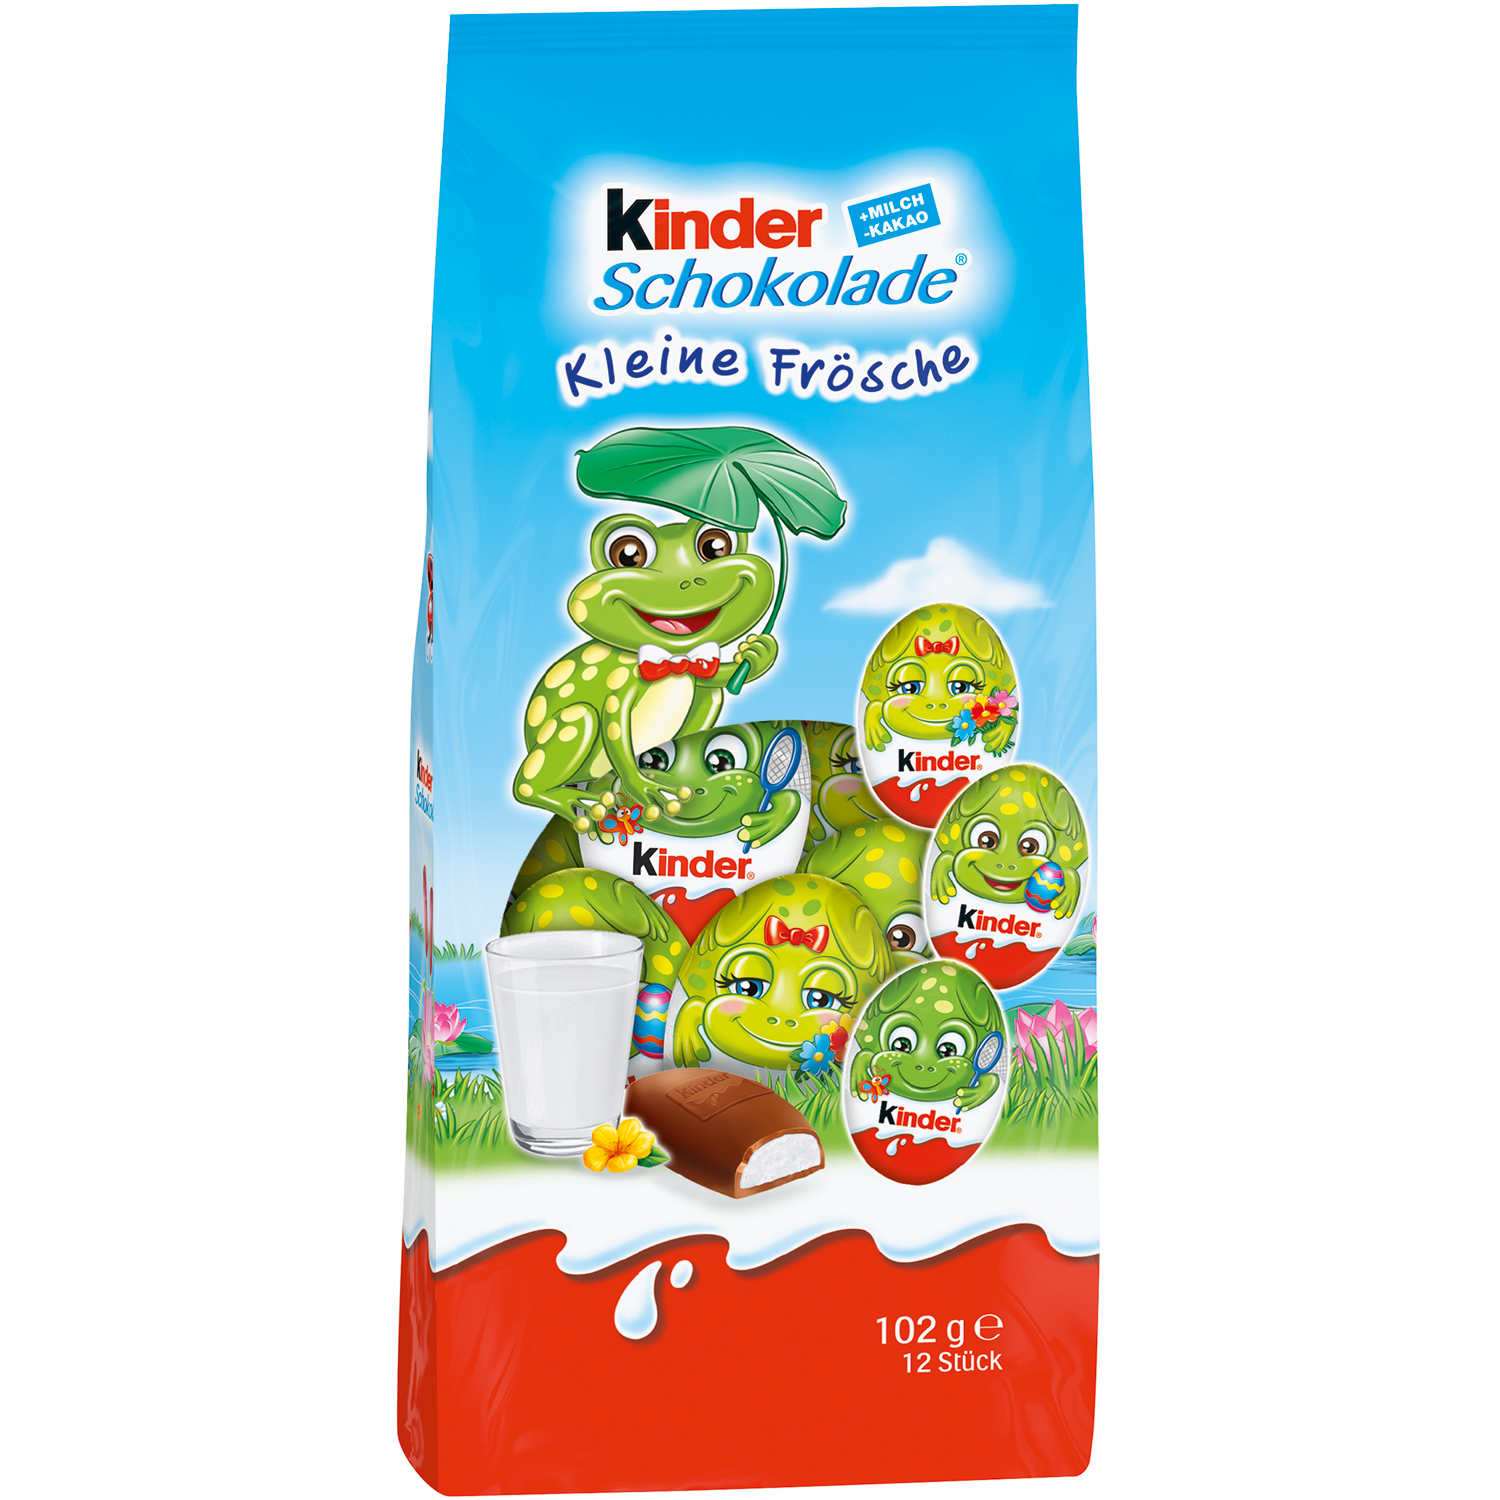 kinder Schokolade kleine Frösche 102g | Online kaufen im World of ...